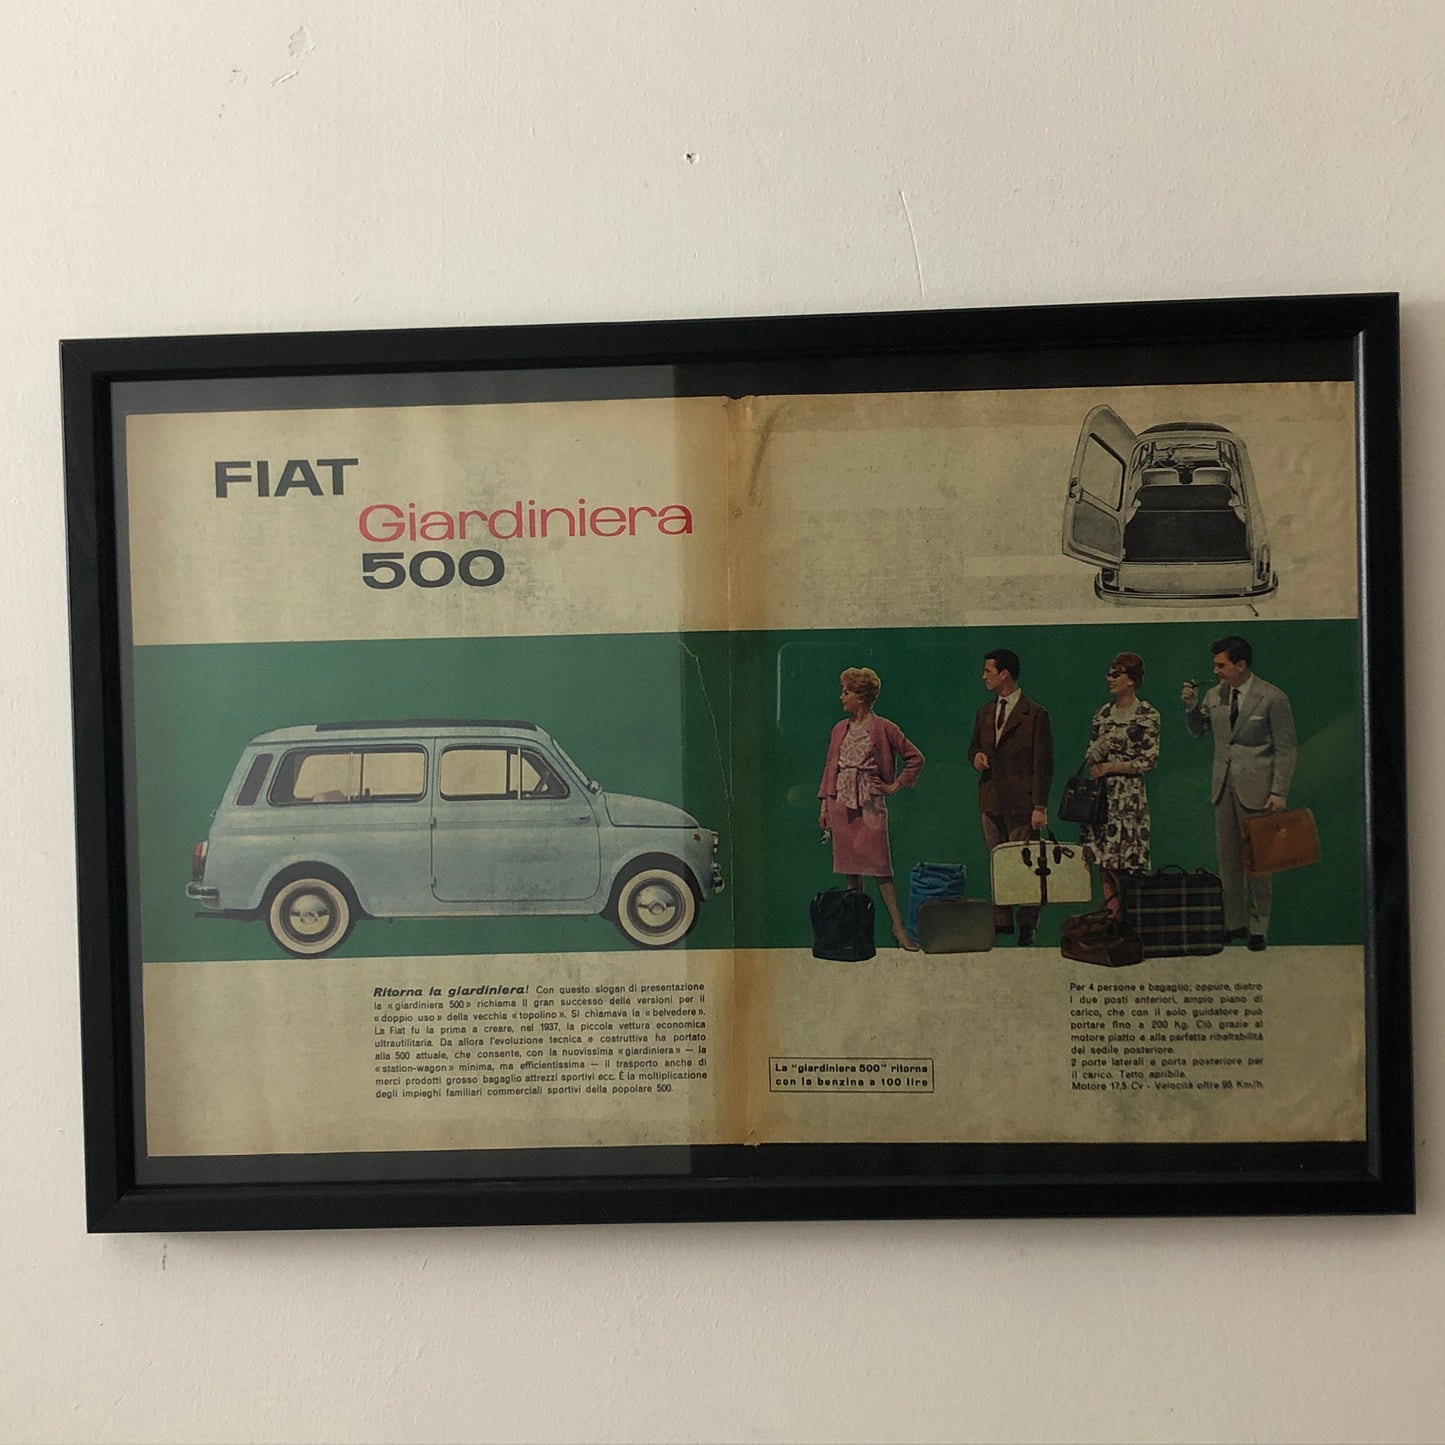 Fiat Pubblicità Anno 1960 FIAT 500 Giardiniera con Didascalia in Italiano